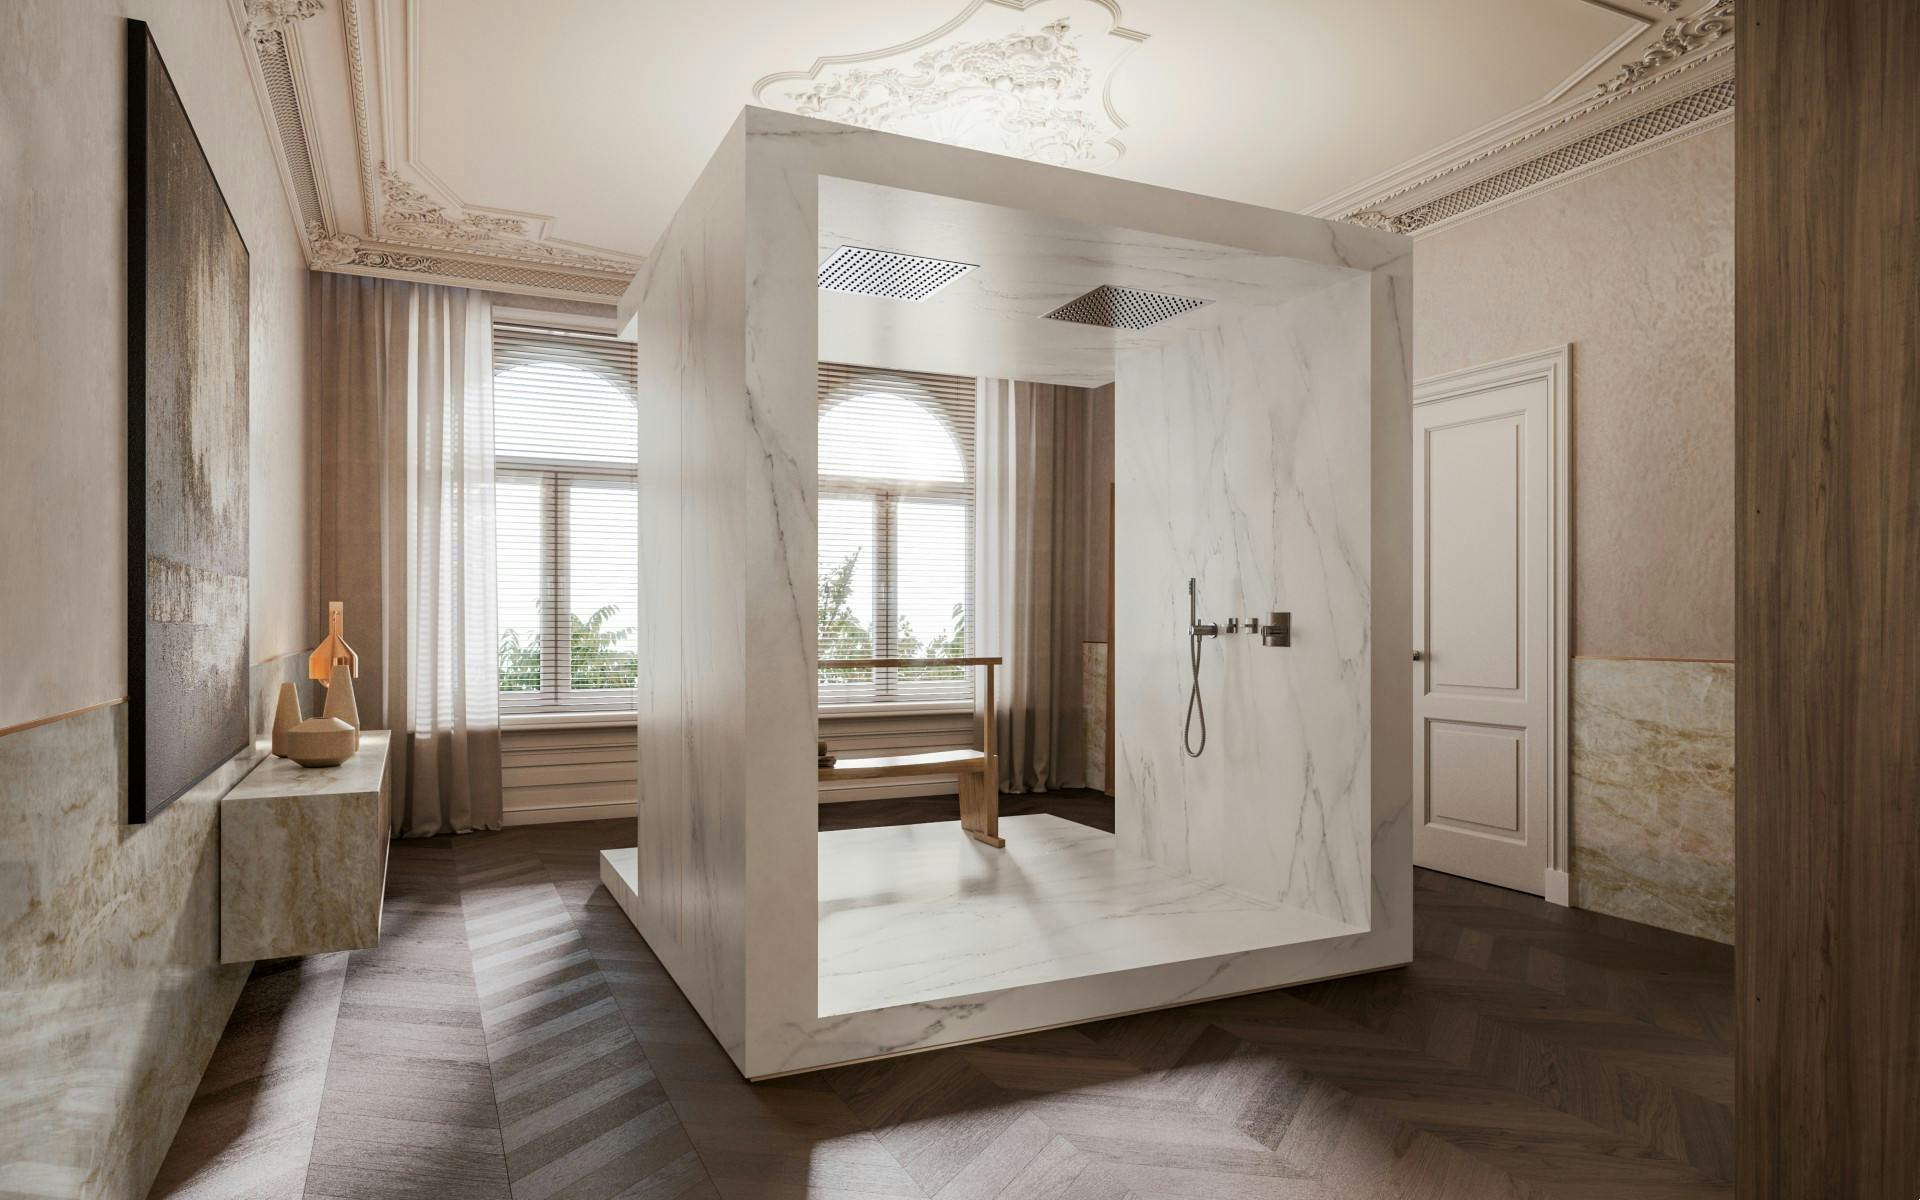 Numéro d'image 32 de la section actuelle de {{The perfect bathroom according to Remy Meijers}} de Cosentino France